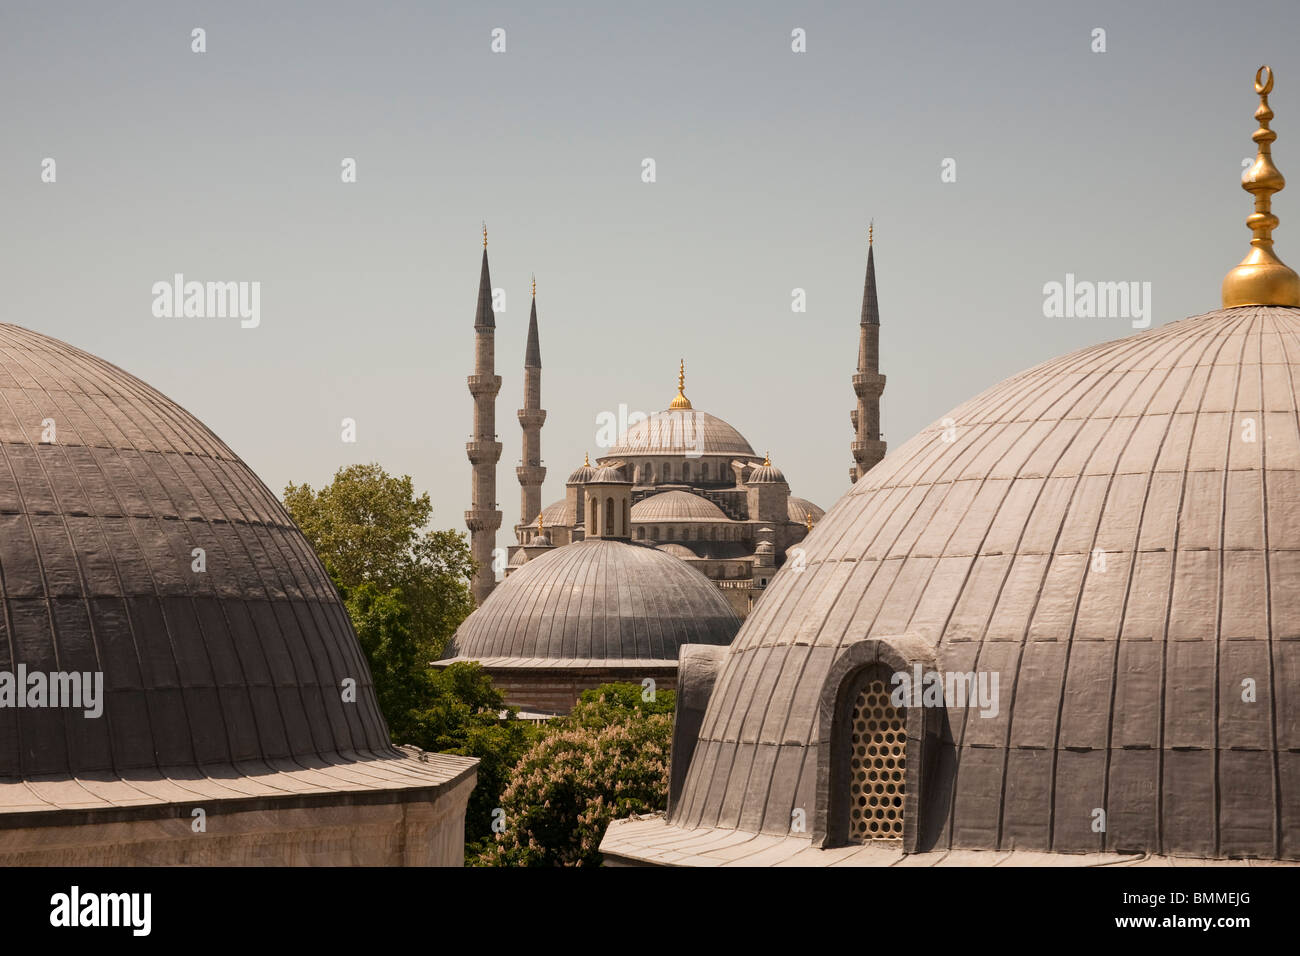 Sultanahmet-Moschee, auch bekannt als die blaue Moschee und Sultan Ahmed Mosque, von Haghia Sophia, Istanbul, Türkei Stockfoto